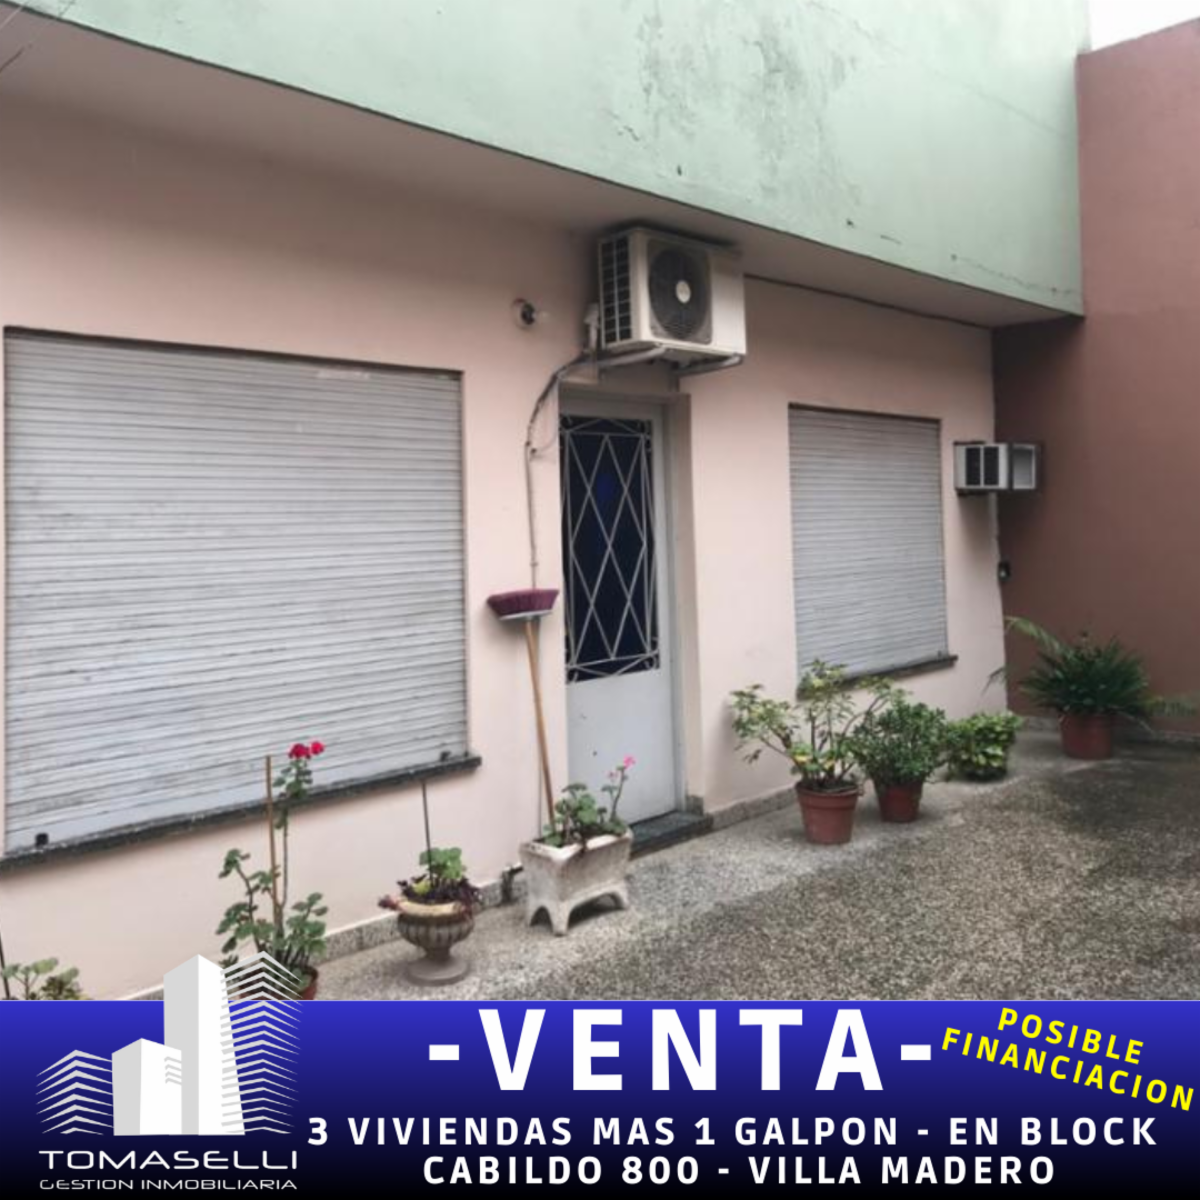 VENTA - 3 VIVIENDAS MAS 1 GALPON - EN BLOCK - VILLA MADERO - POSIBLE FINANCIACION